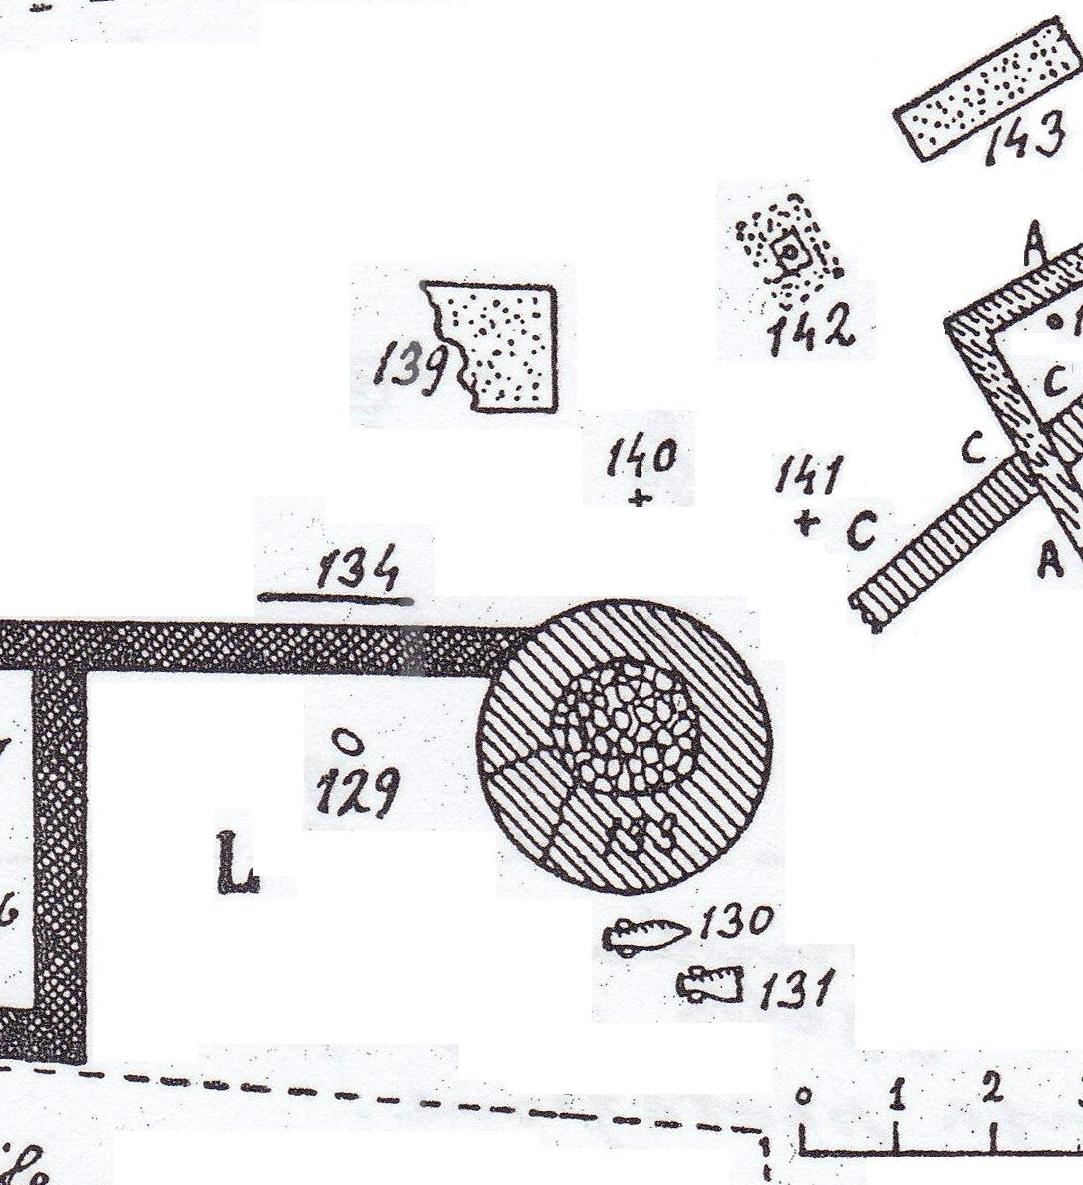 Necropoli di Albintimilium, recinto L, tomba 130 (tomba a enchytrismos, area ad uso funerario) - Ventimiglia (IM)  (fine/ inizio Età romana imperiale)